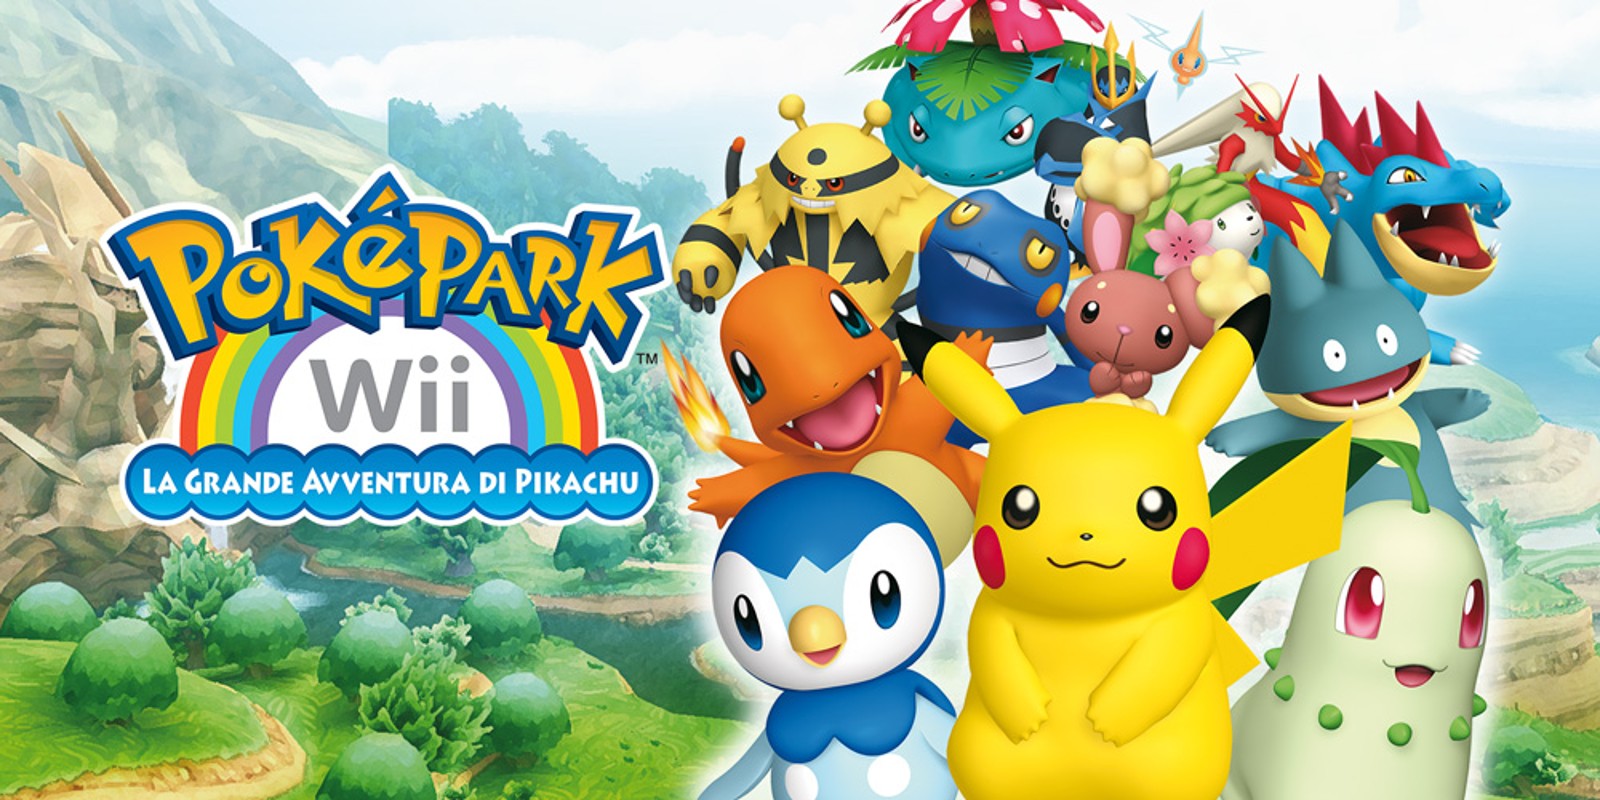 PokéPark Wii: la grande avventura di Pikachu